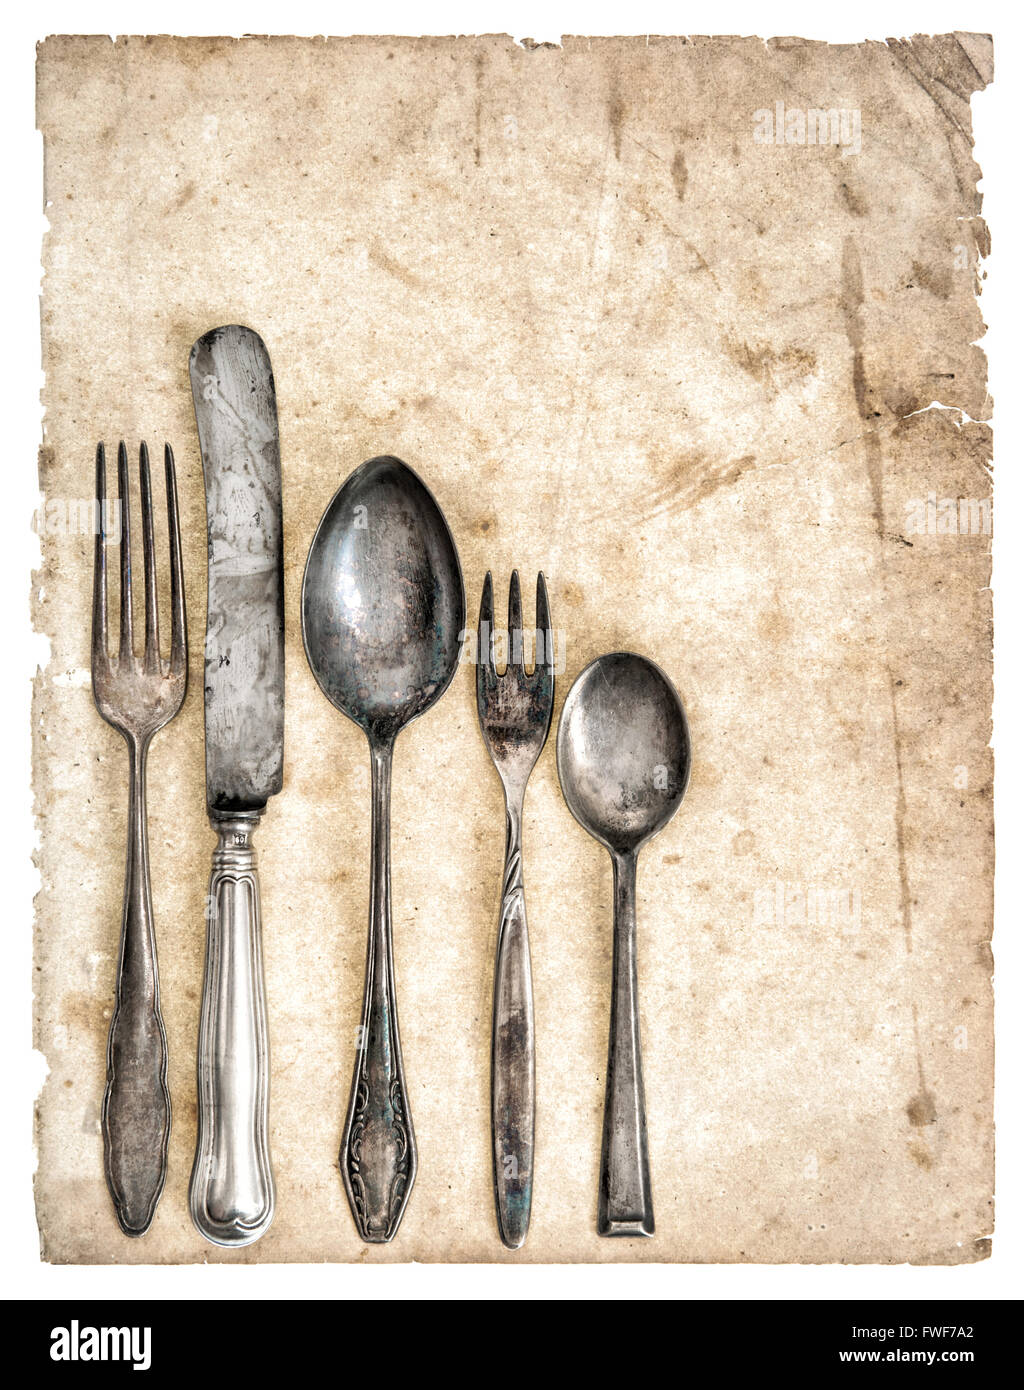 Les couverts anciens et anciennes page de livre de cuisinier. Retro ustensiles de cuisine couteaux, fourchettes et cuillères Banque D'Images